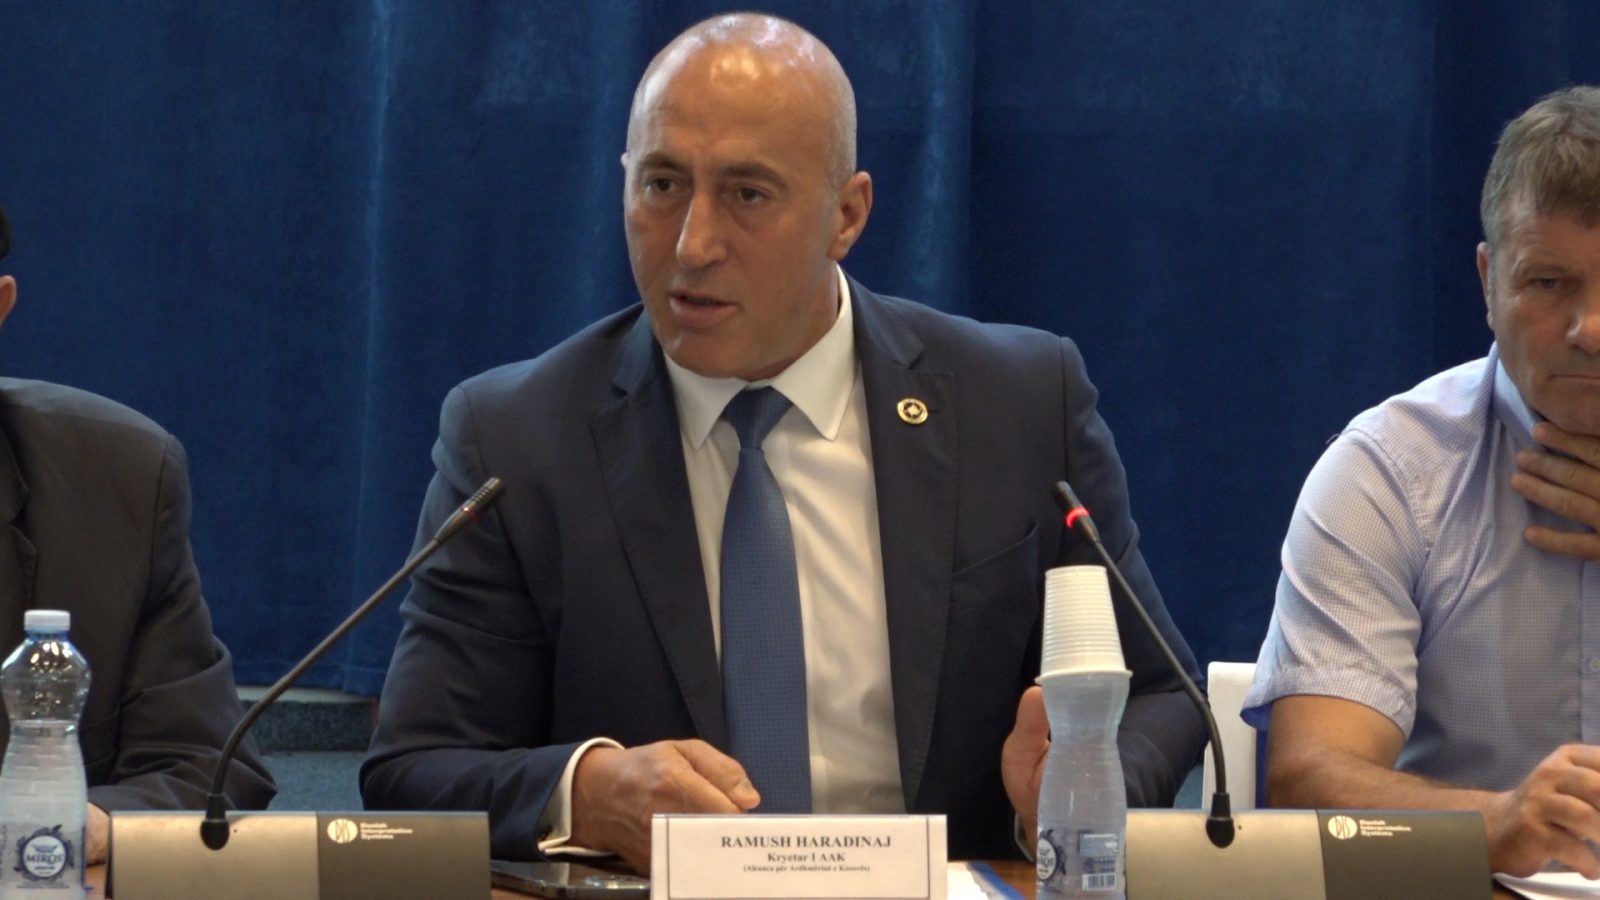 Haradinaj: Qeveria ua ka ngulur thikën pas shpine kategorive të shenjta të popullit